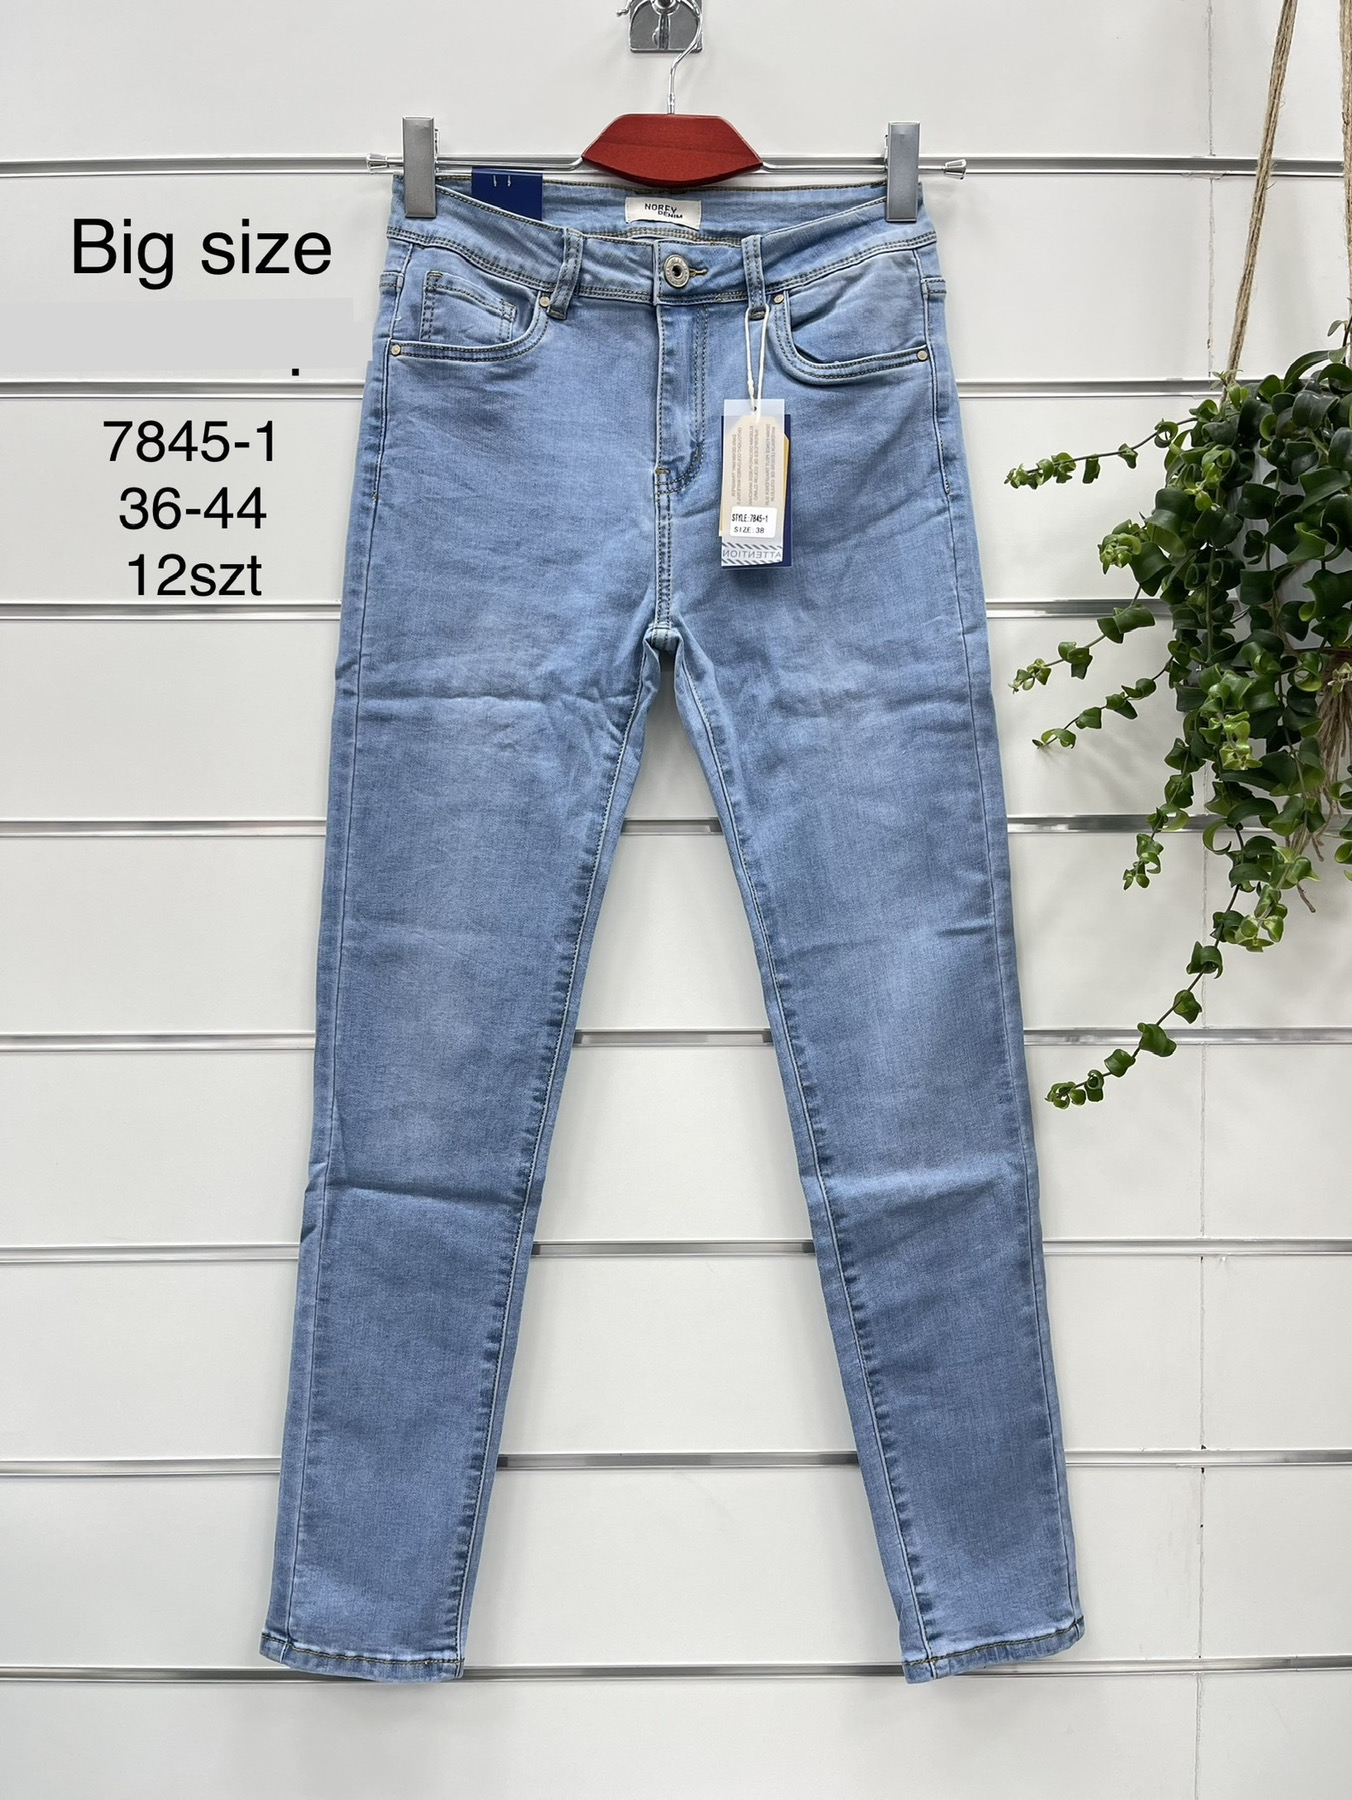 Spodnie  damskie jeans   Roz  36-44  1 kolor . Paczka 12szt